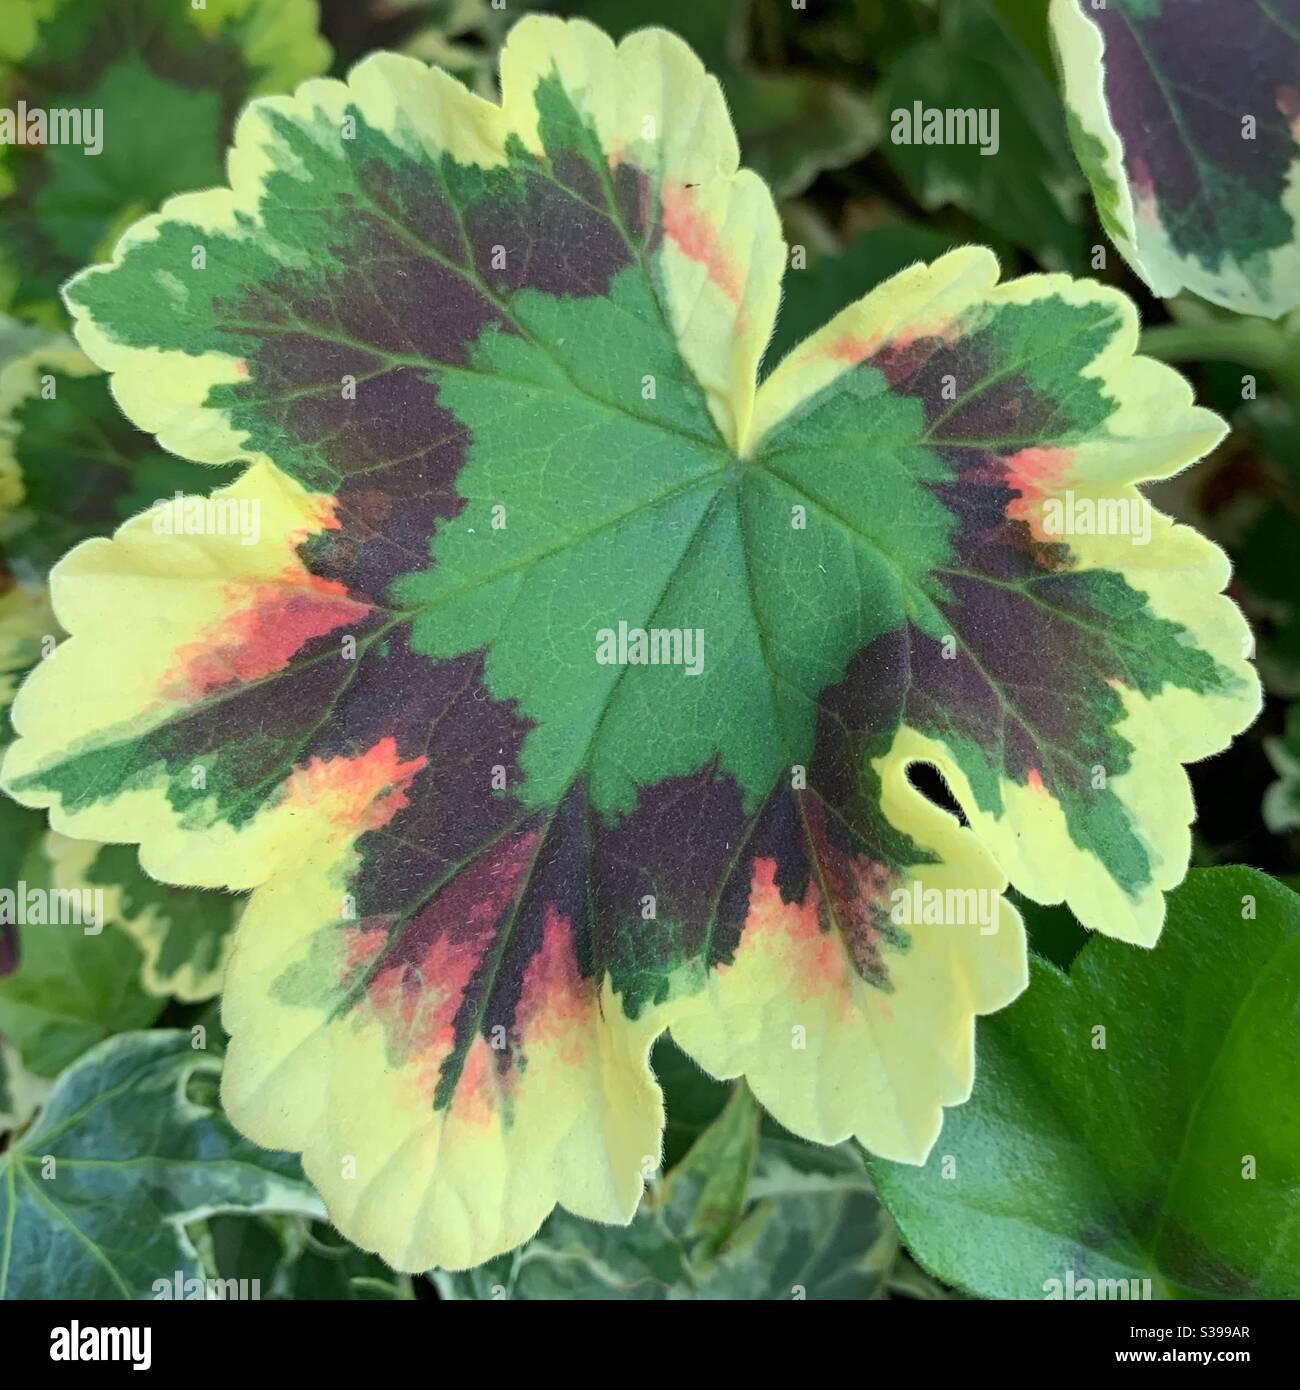 Pelargonium x Hortorum ivyleaf geranium Stock Photo